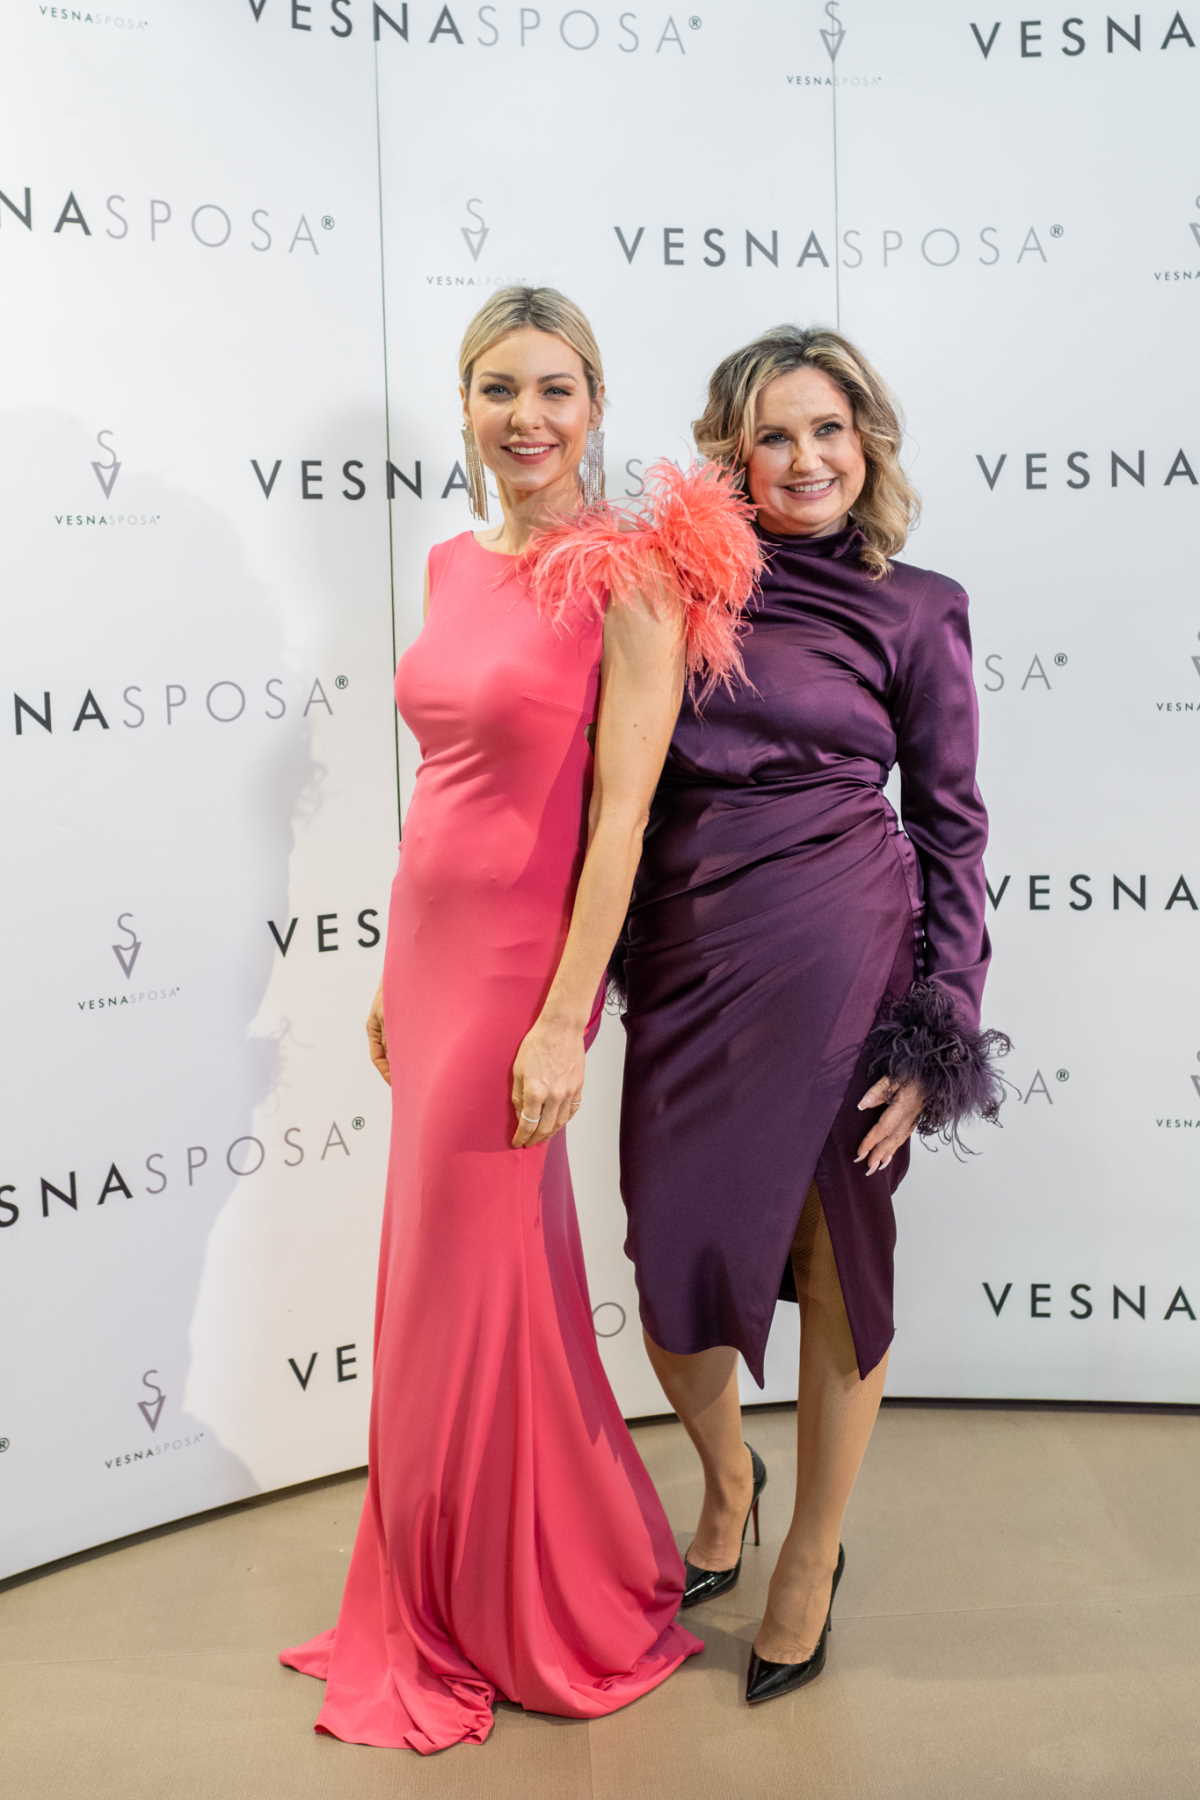 Vesna Sposa slavi punih 30 godina postojanja uz novu kolekciju " Let' s celebrate #30"